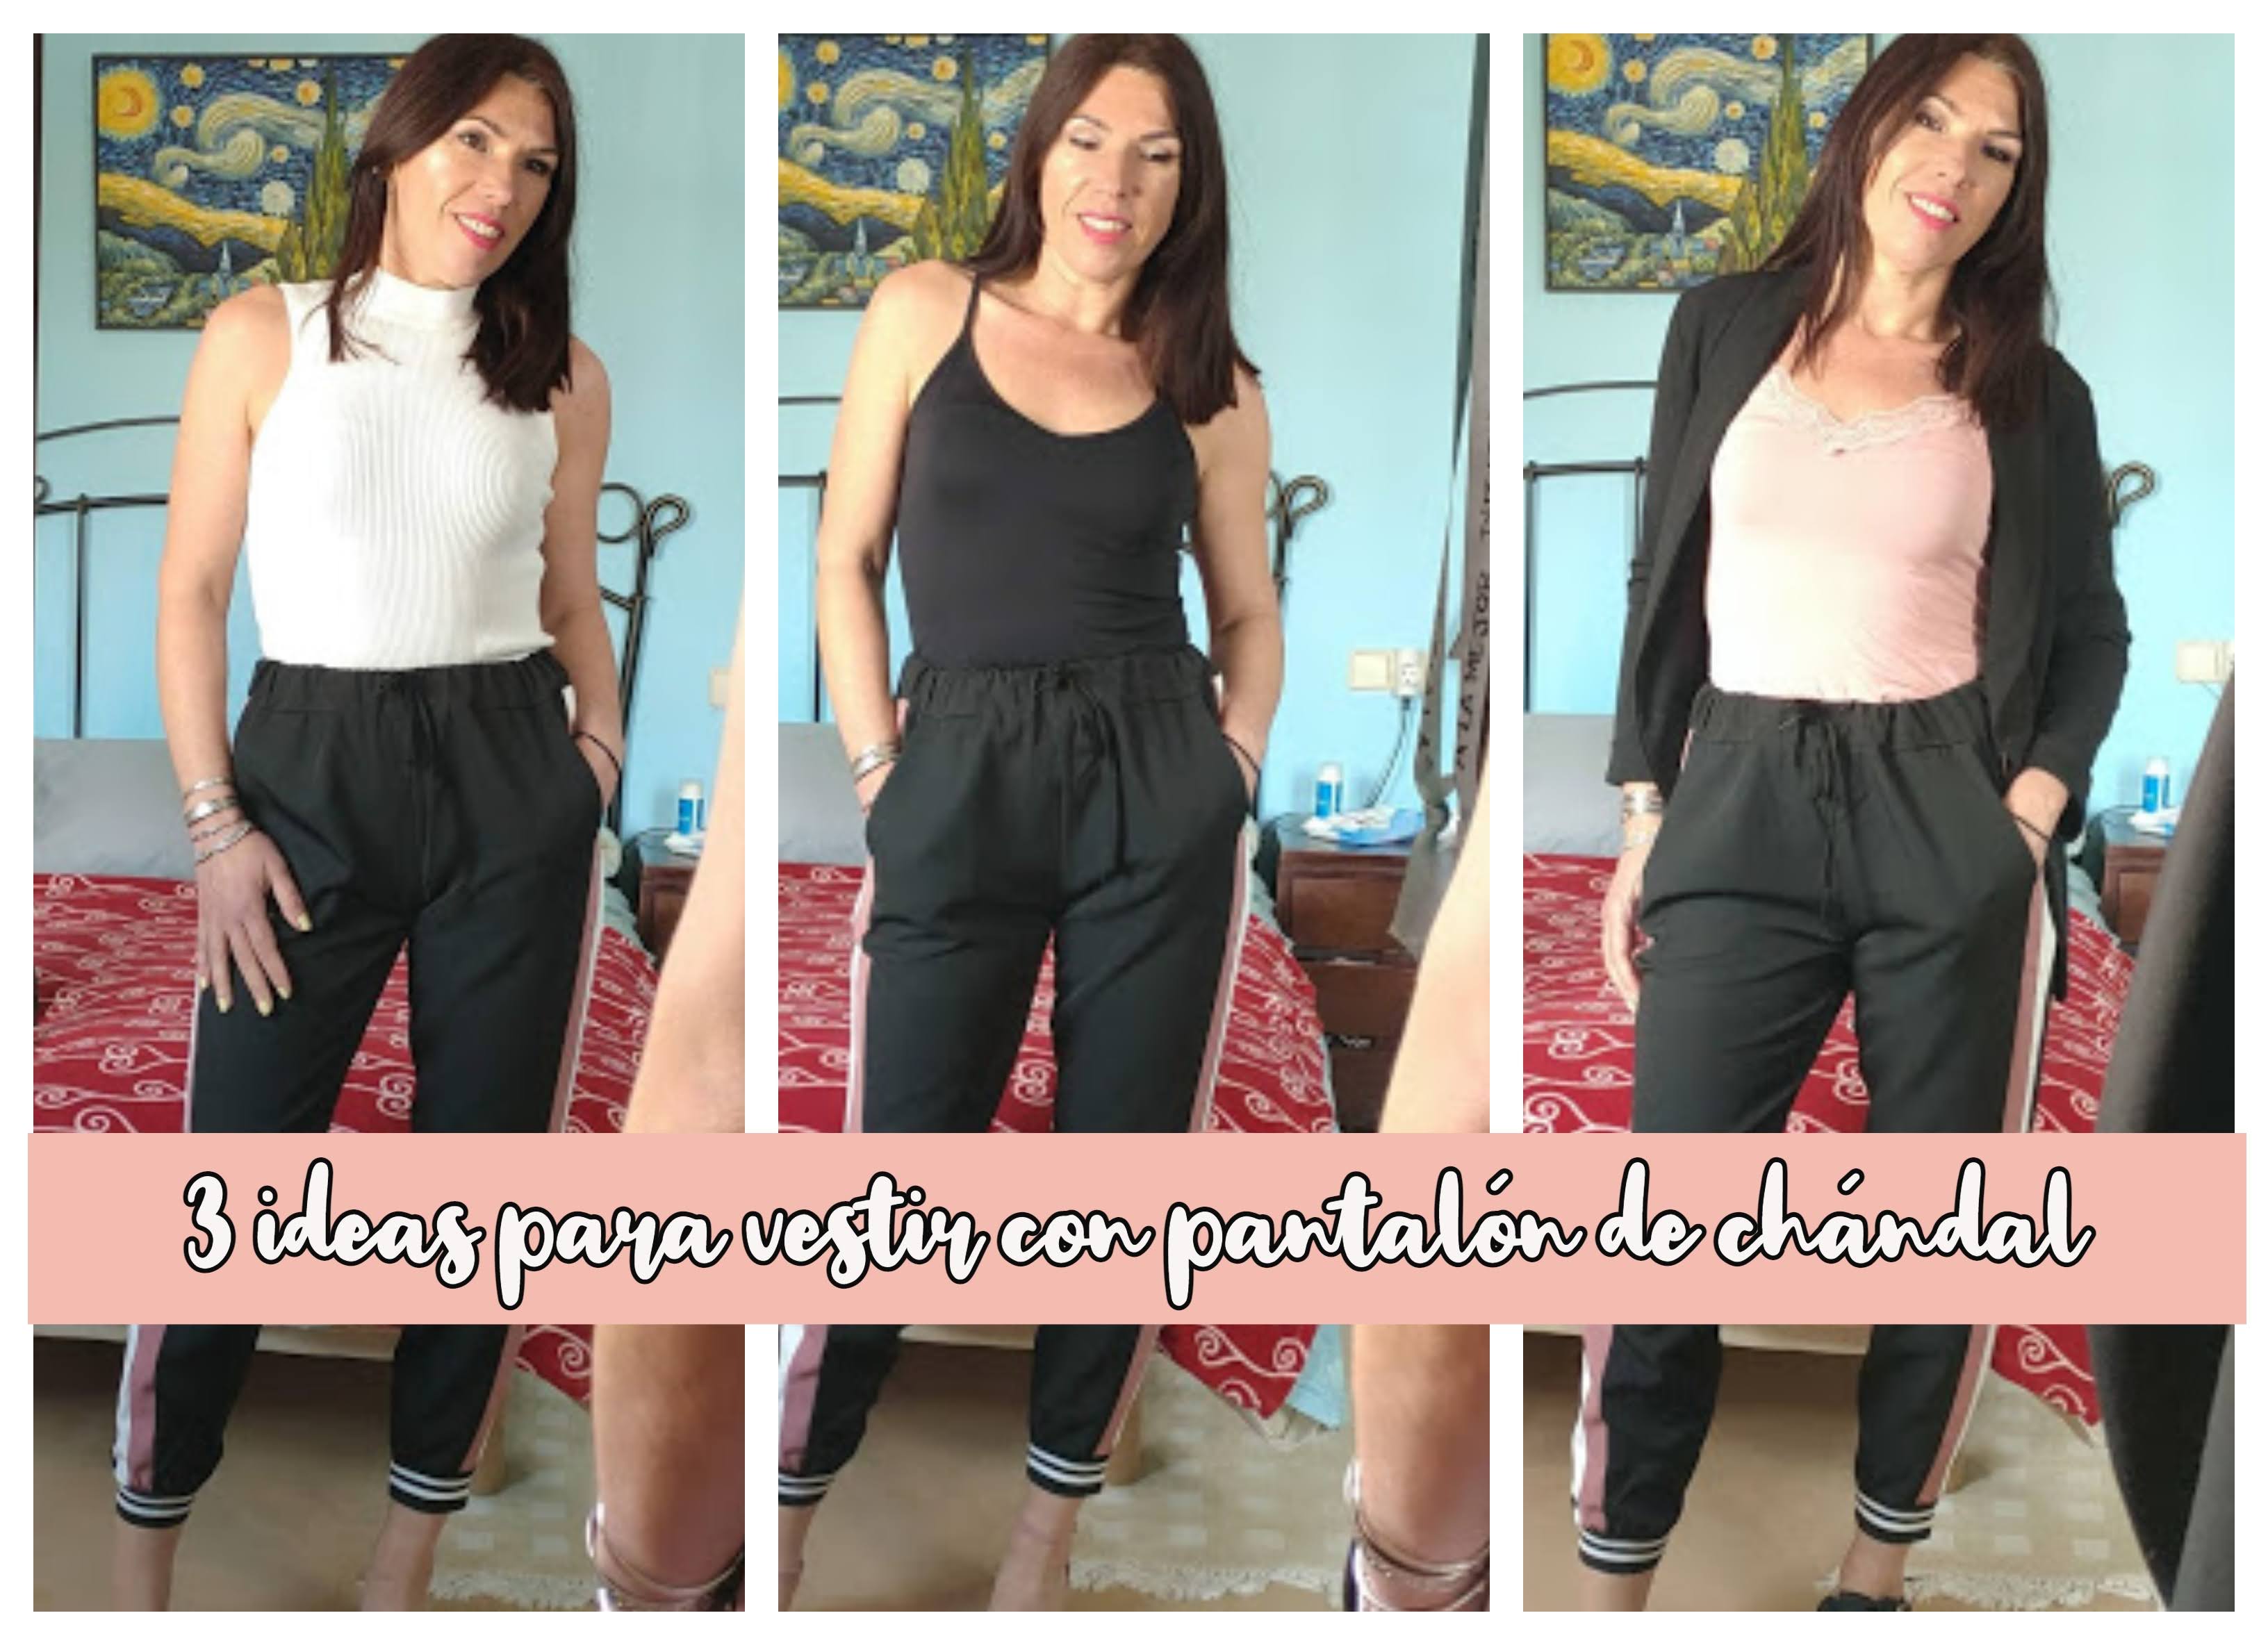 - Blog de bienestar emocional, psicología y más.: 3 ideas para un pantalón chándal...para vestir